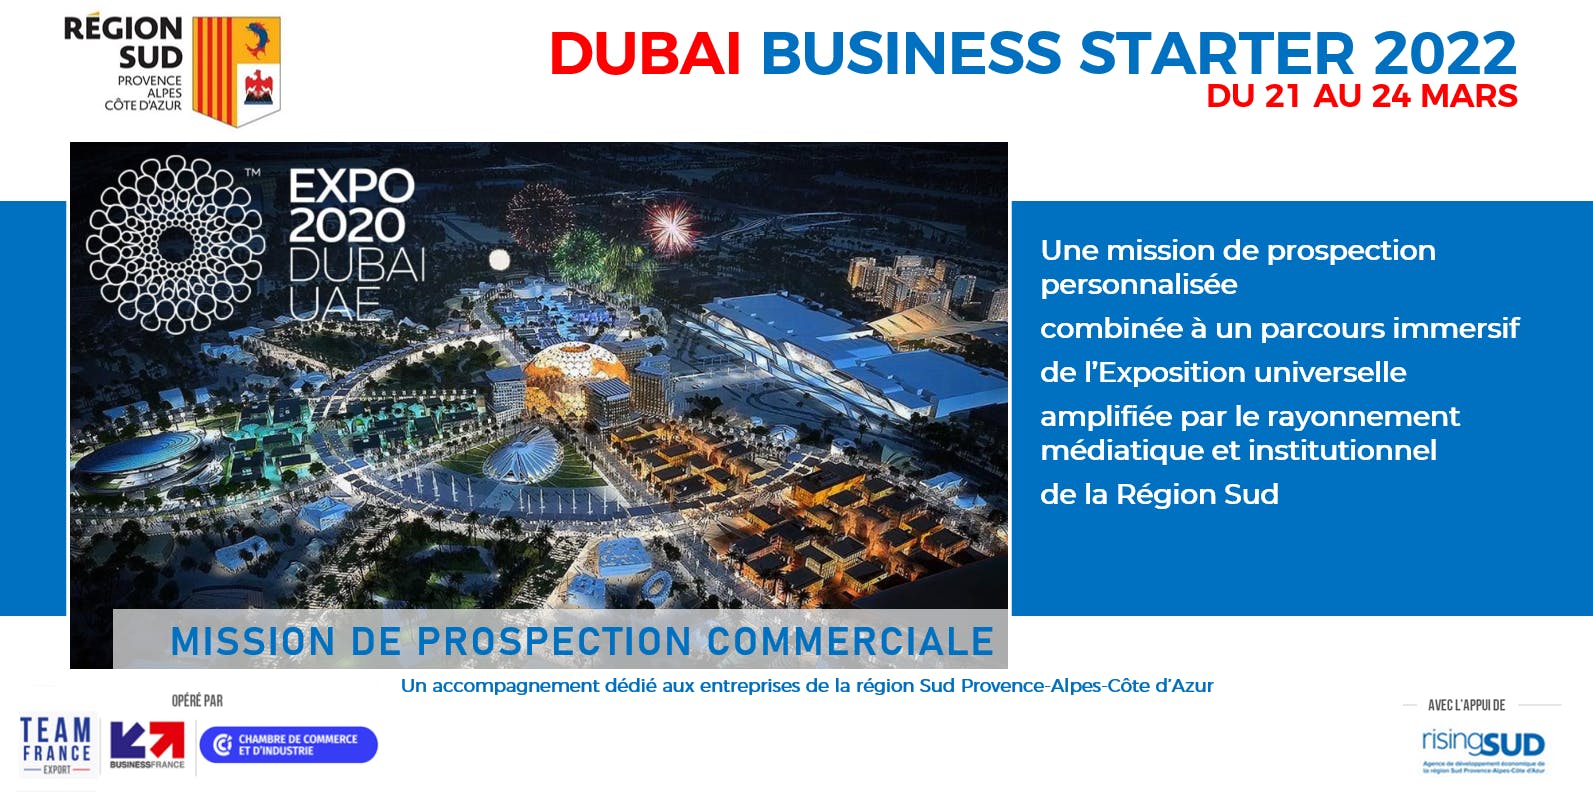 Dubai Business Starter Sud